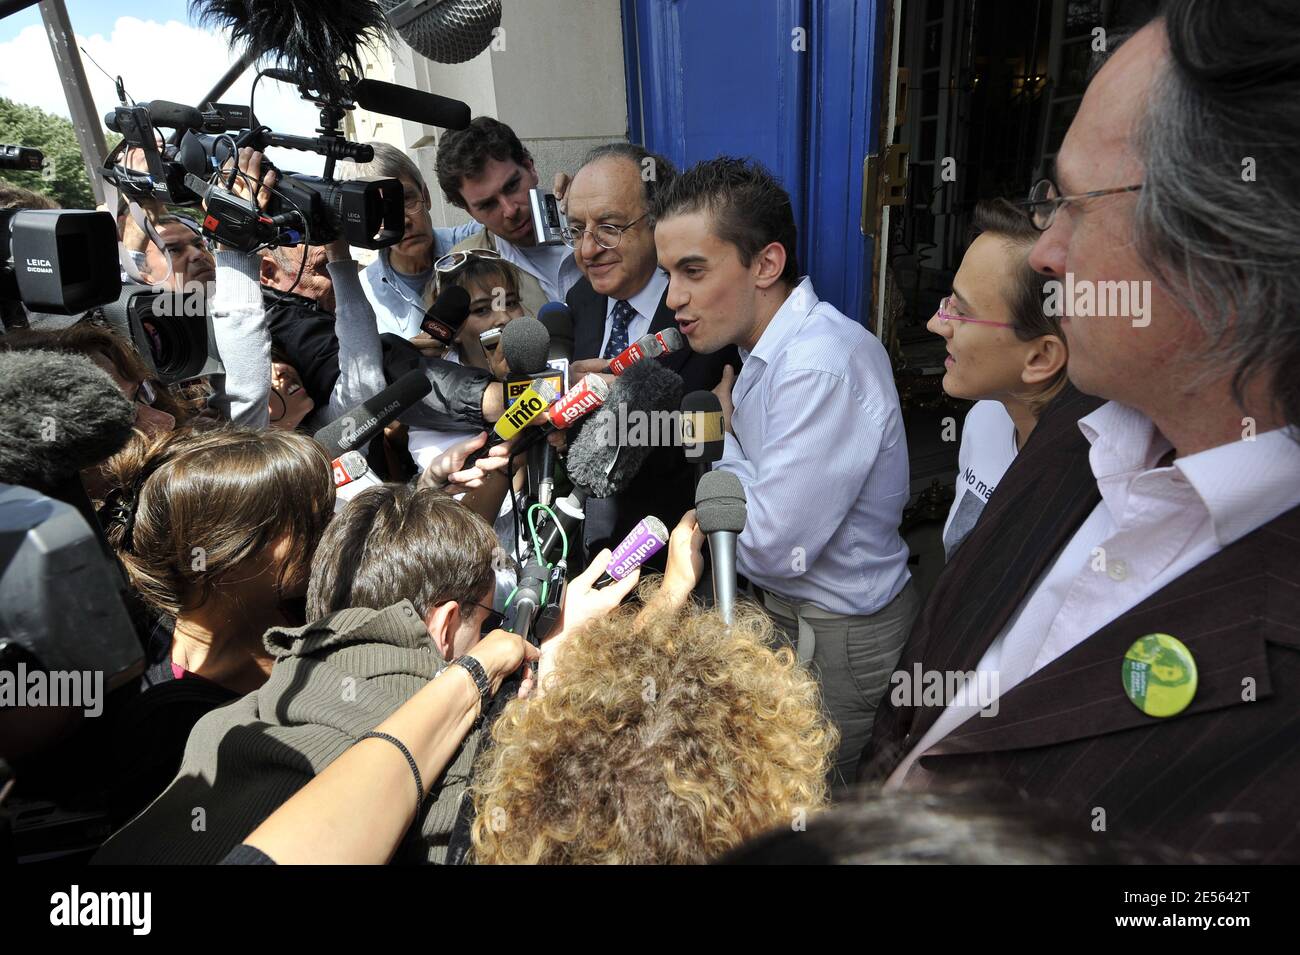 Herve Marro ha visto durante un incontro per celebrare la liberazione di ostaggio colombiano-francese Ingrid Betancourt presso l'ambasciata colombiana a Parigi, Francia il 3 luglio 2008. Foto di Abd Rabbo-Mousse/ABACAPRESS.COM Foto Stock